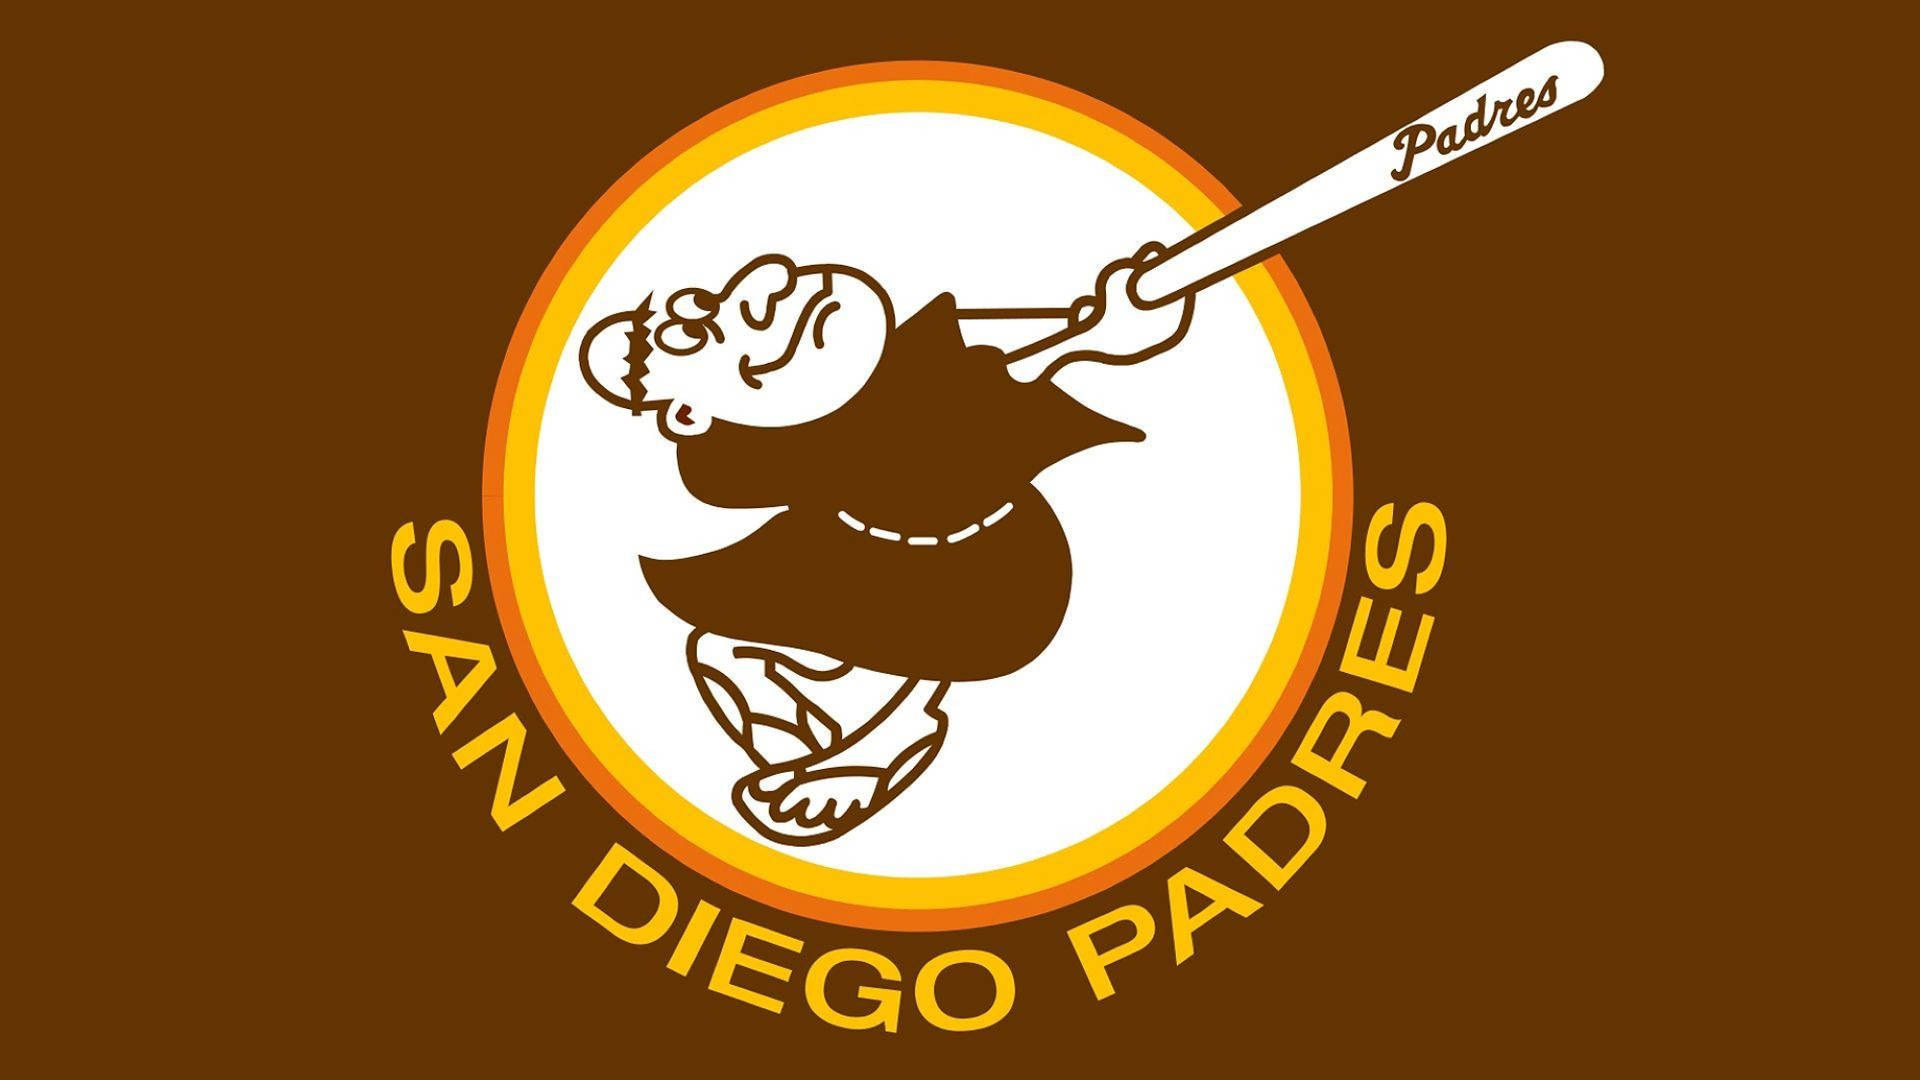 San Diego Padres Baggrunde